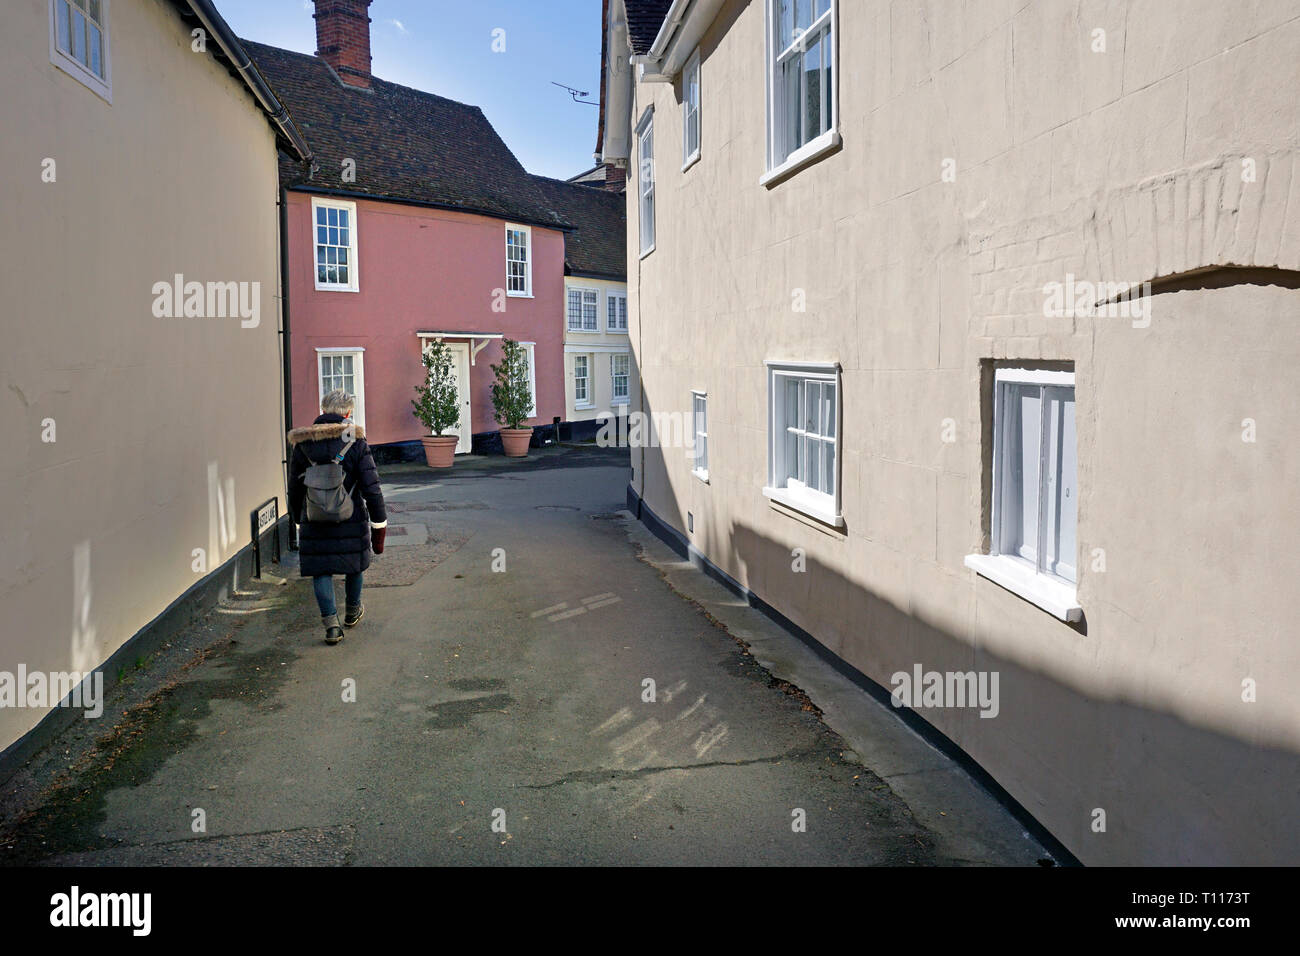 La femme walklng solitaire par sdtreet Hedinghmam retour Casle, Essex, Angleterre Banque D'Images